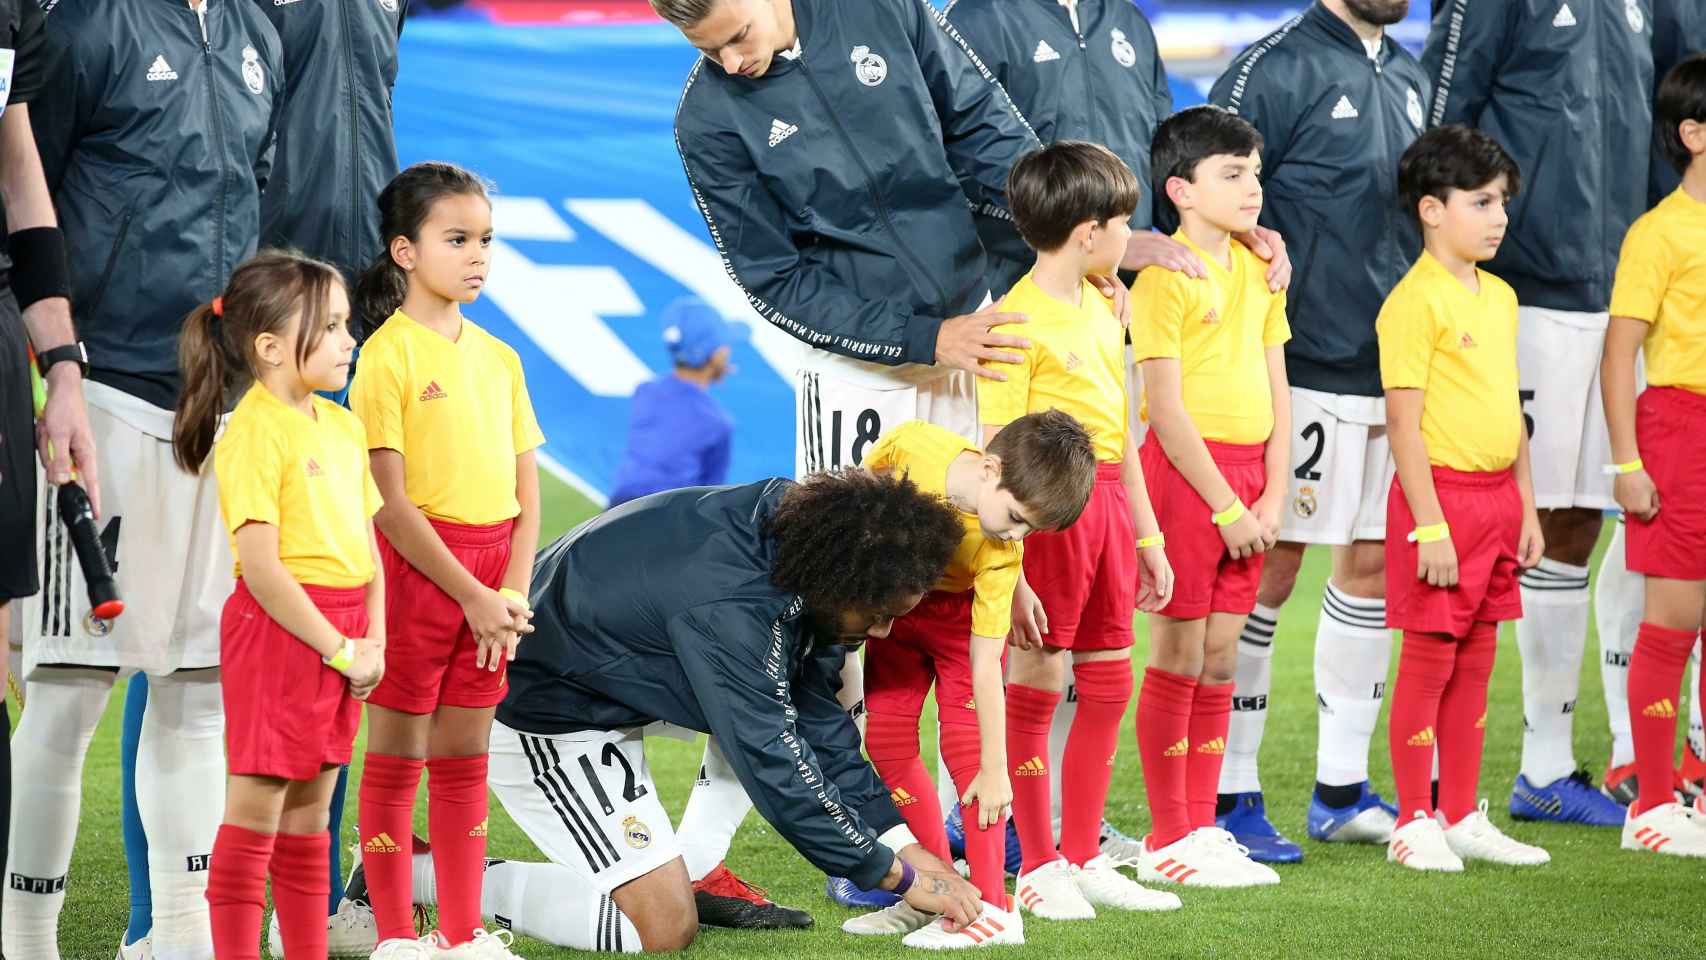 El lateral izquierdo Marcelo ata el cordón del zapato a un niño durante el posado previo a la semifinal del Mundial de Clubes